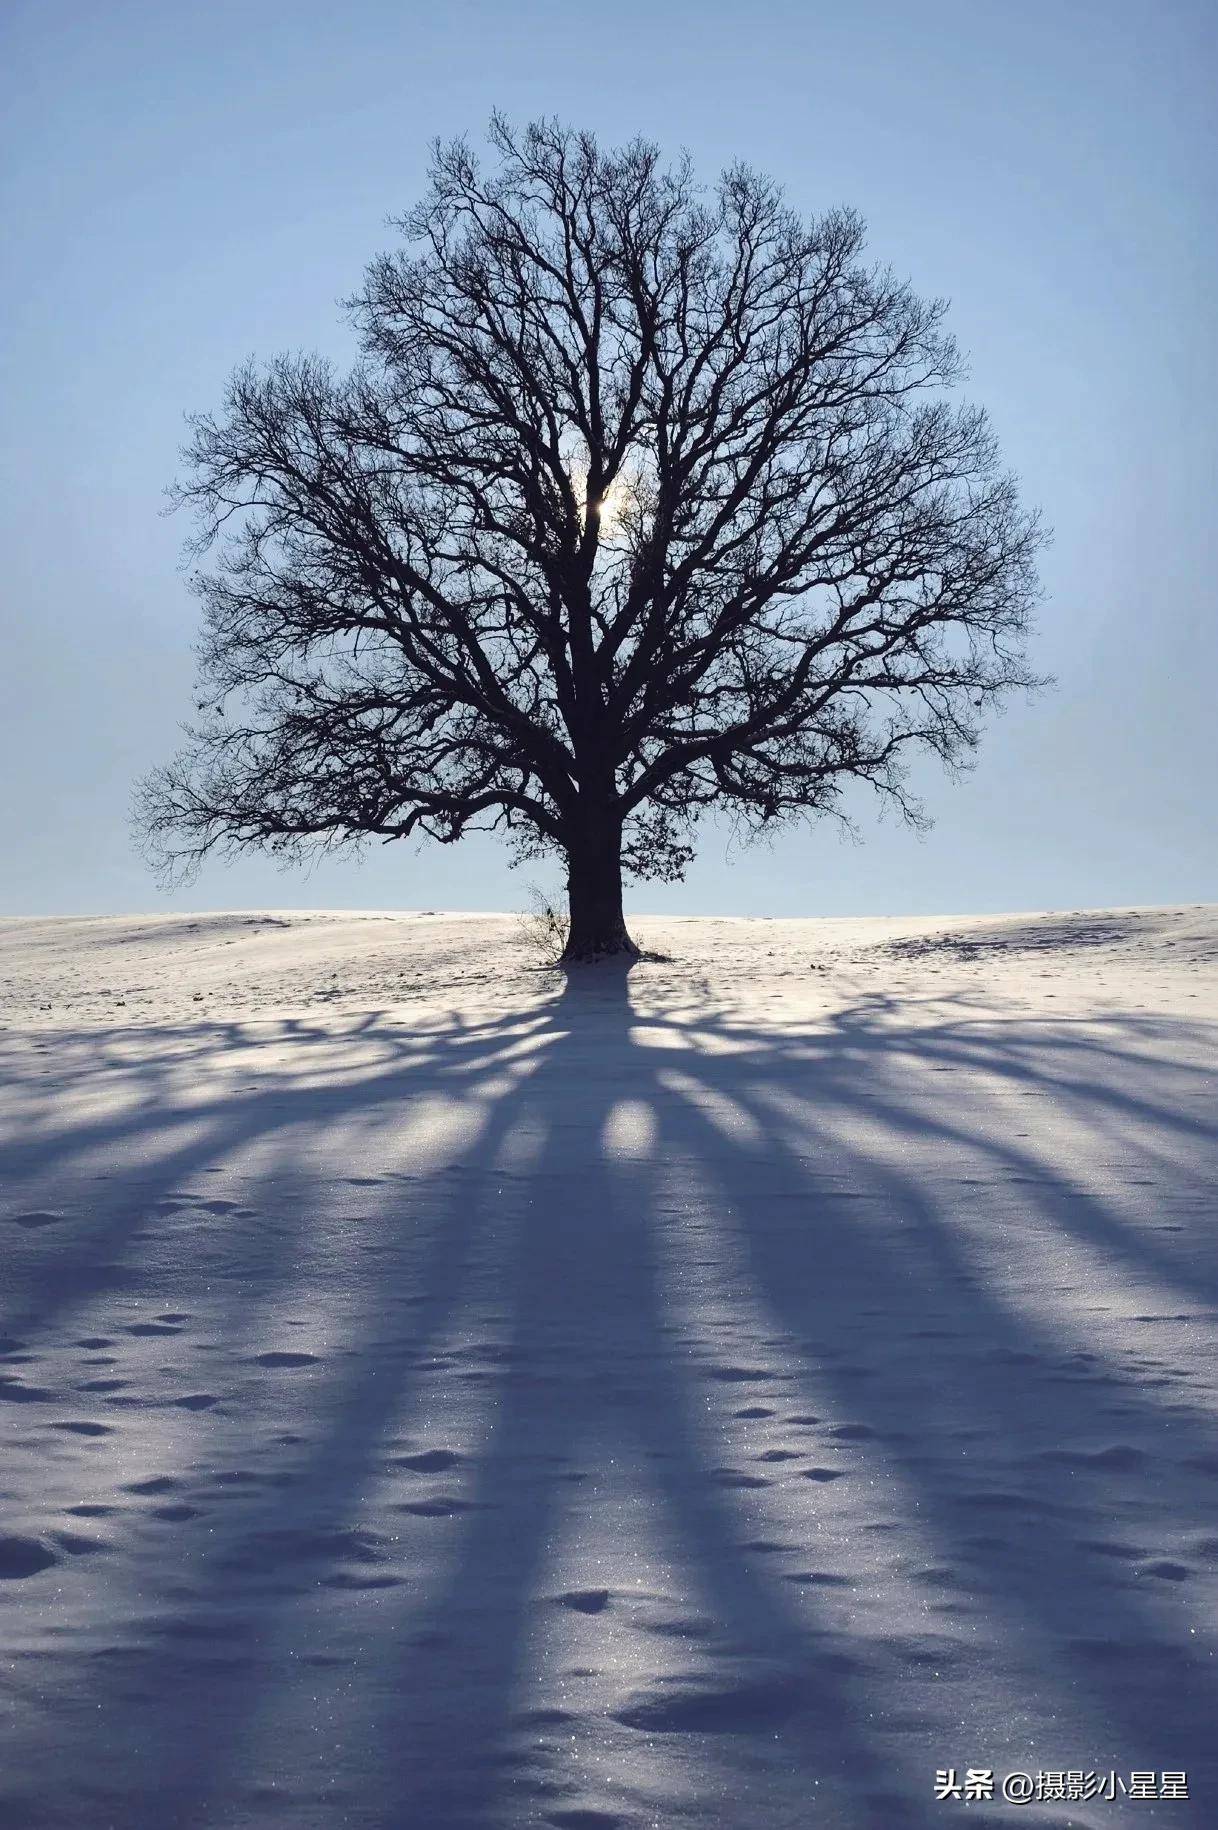 雪地里的树的影子,唯美而诗意